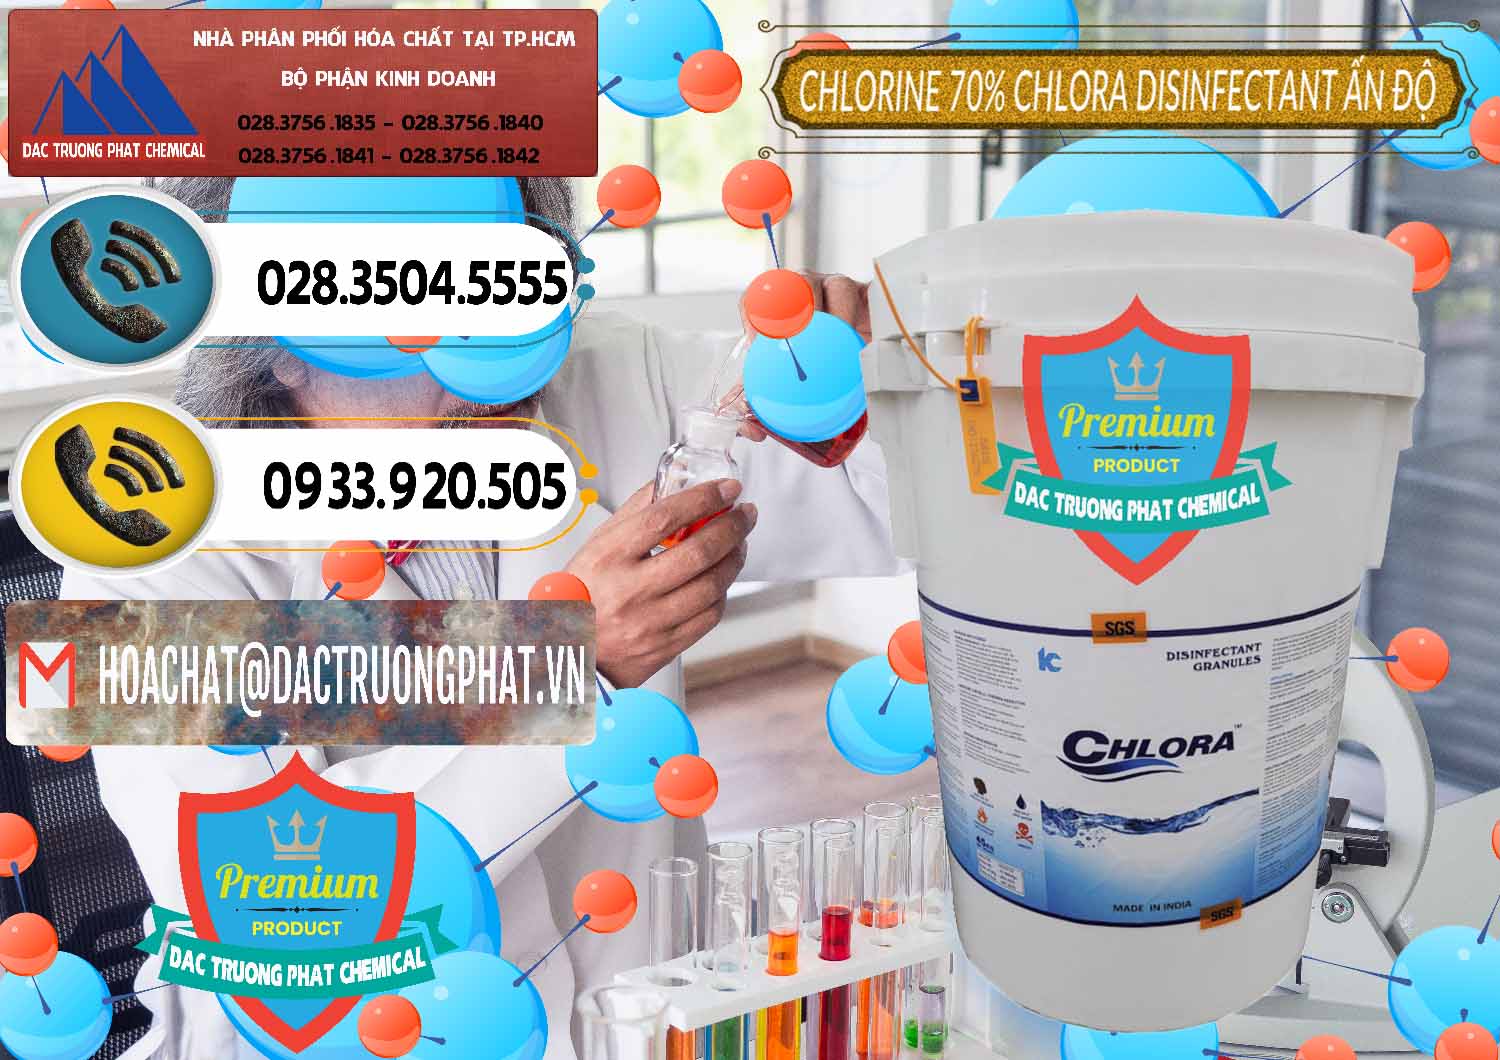 Nơi chuyên cung cấp - bán Chlorine – Clorin 70% Chlora Disinfectant Ấn Độ India - 0213 - Cty cung cấp ( bán ) hóa chất tại TP.HCM - hoachatdetnhuom.vn